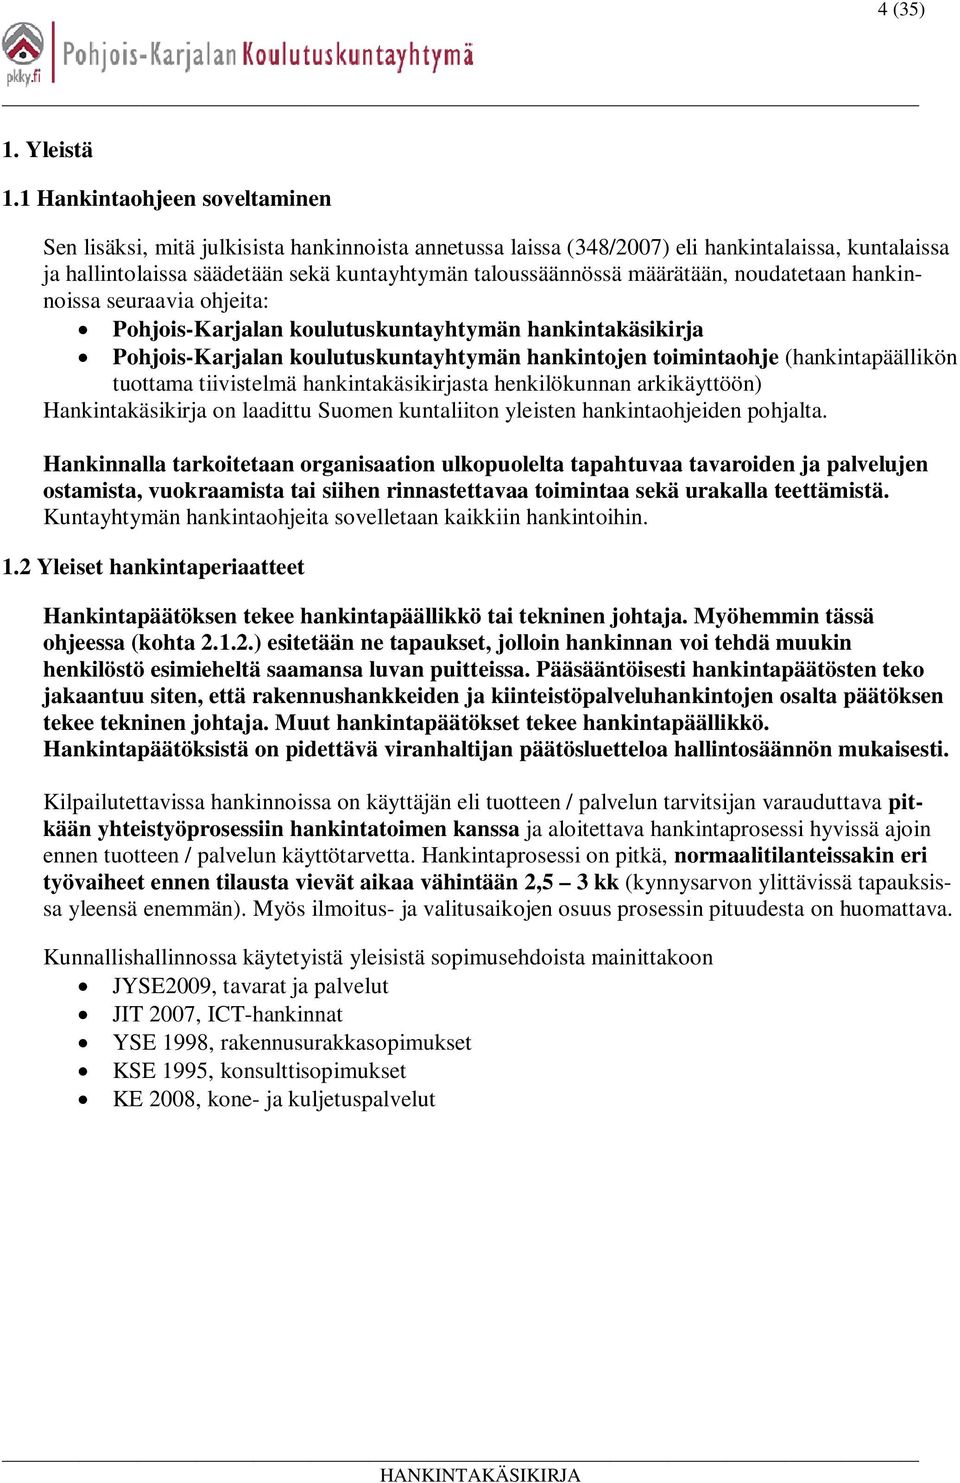 määrätään, noudatetaan hankinnoissa seuraavia ohjeita: Pohjois-Karjalan koulutuskuntayhtymän hankintakäsikirja Pohjois-Karjalan koulutuskuntayhtymän hankintojen toimintaohje (hankintapäällikön